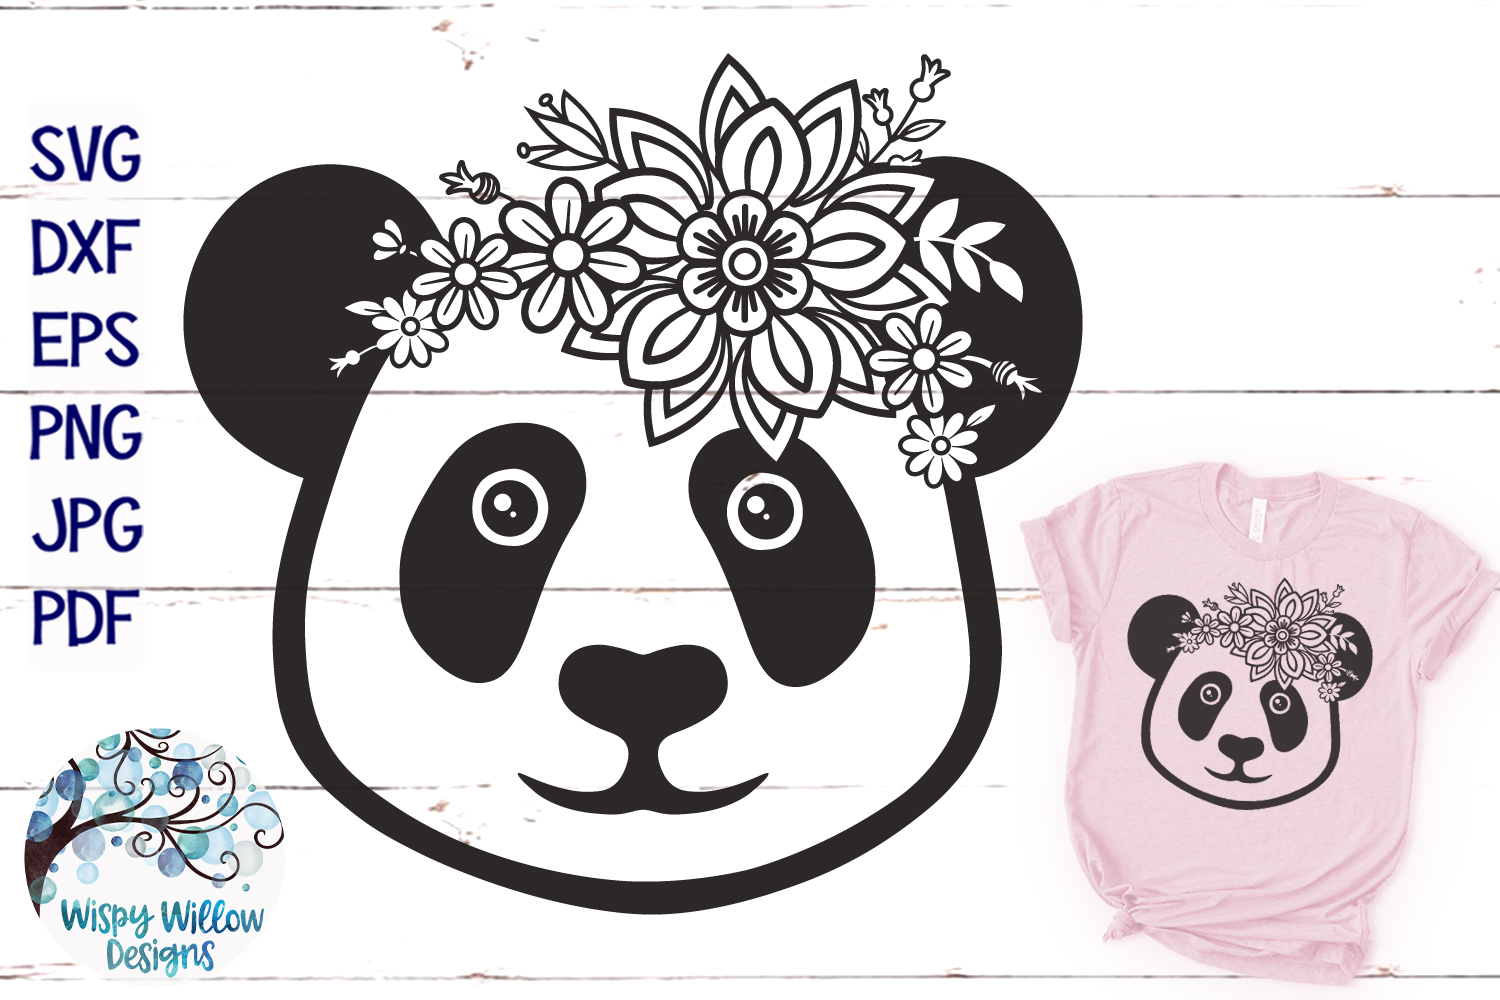 Download Floral Panda SVG | Cute Panda Face SVG Cut File (304158 ...